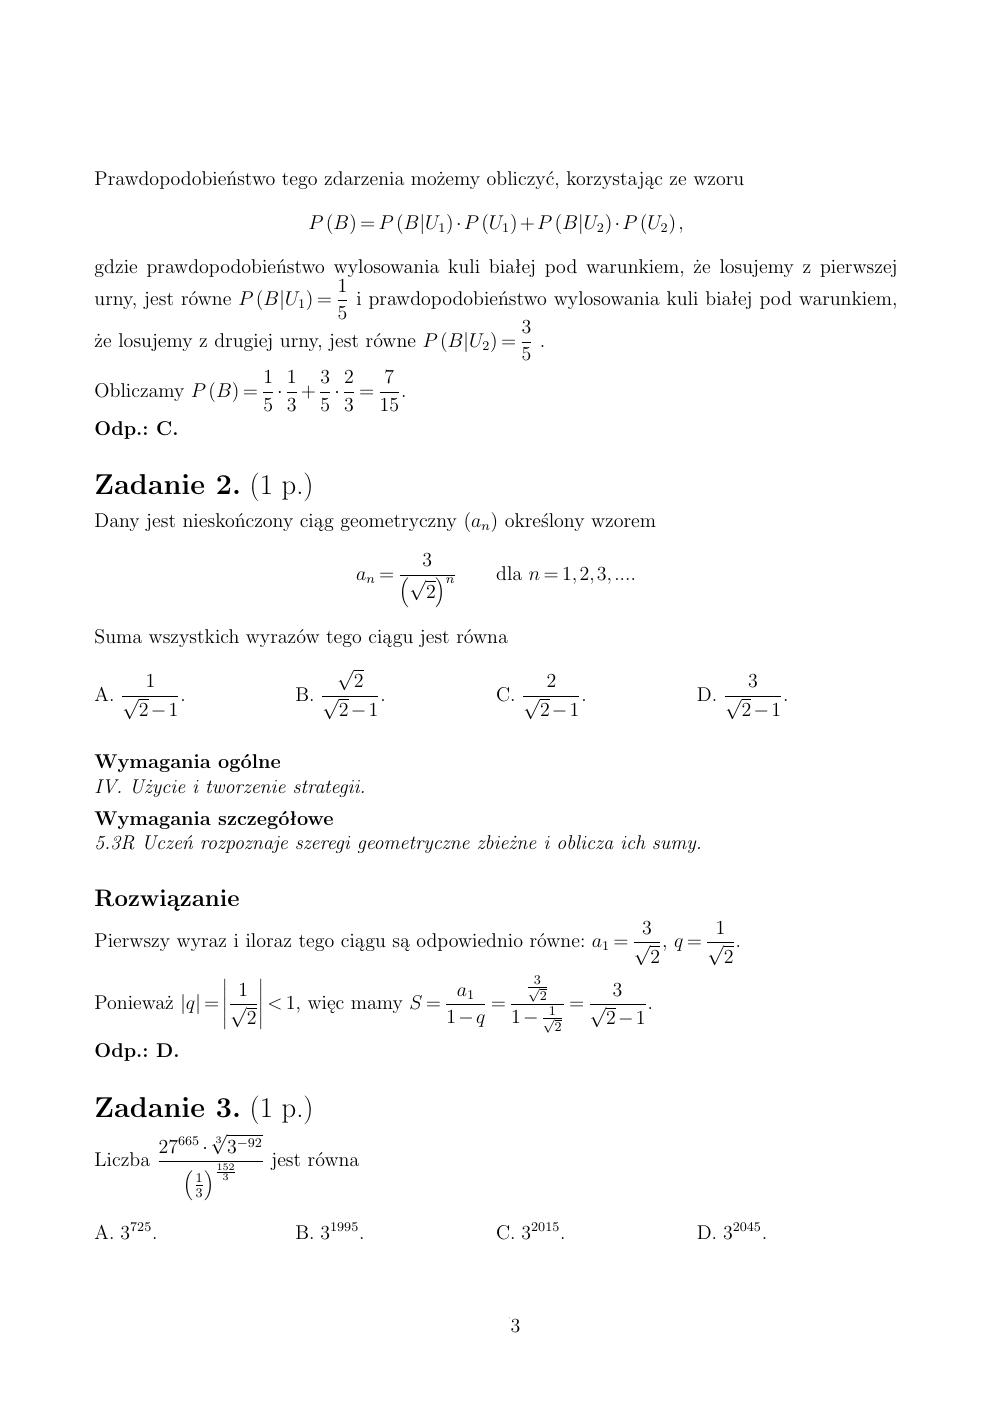 zasady oceniania - odpowiedzi - matematyka rozszerzony - matura 2015 przykładowa-03